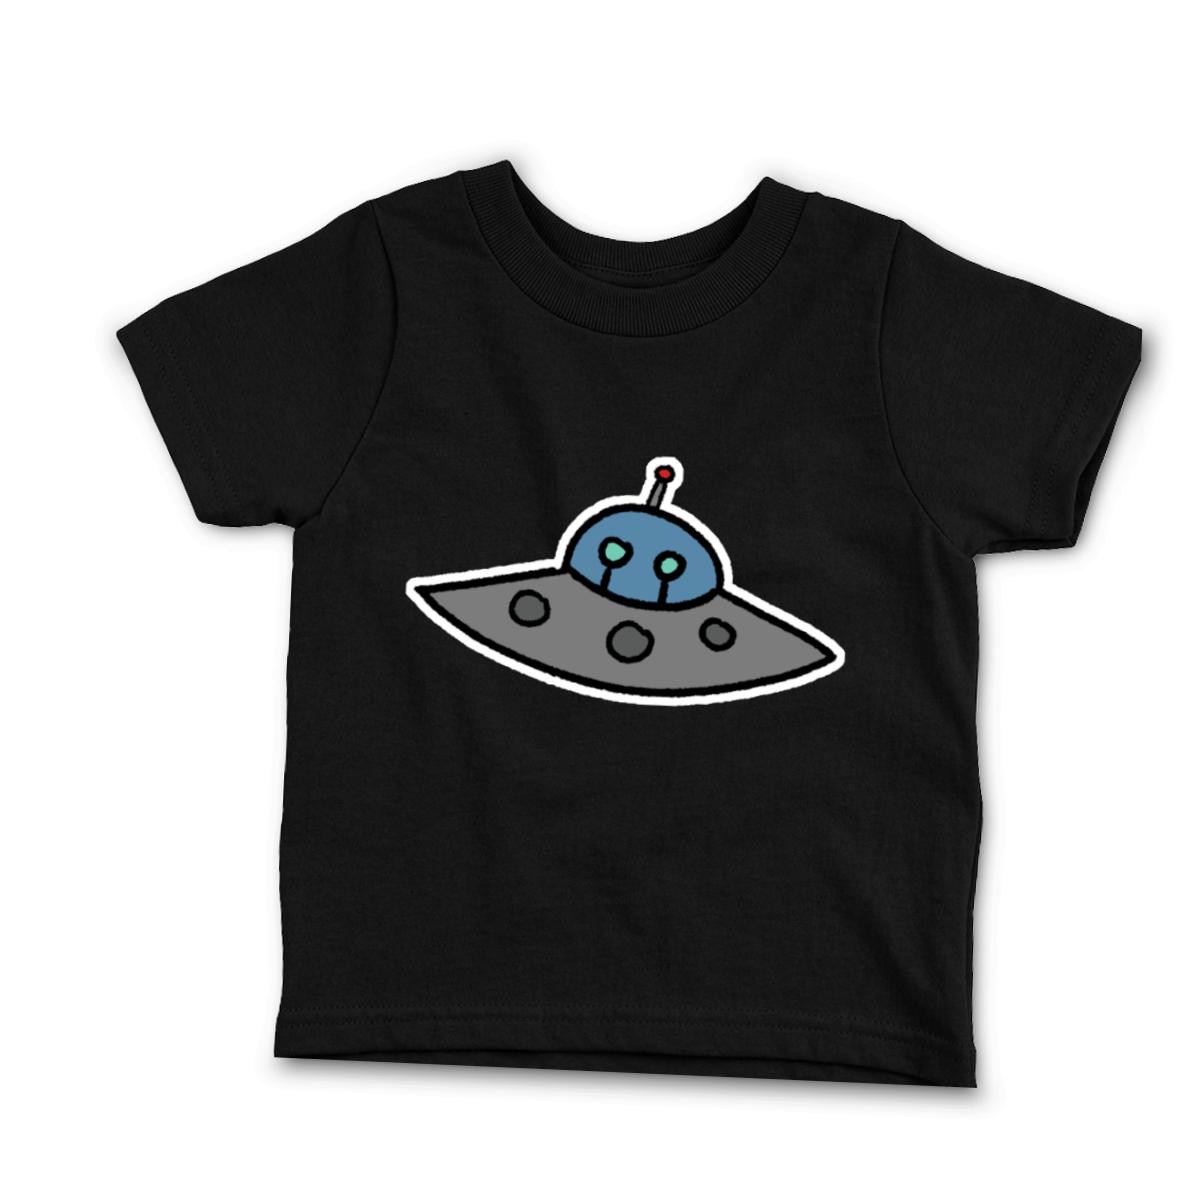 Flying Saucer Infant Tee 12M black